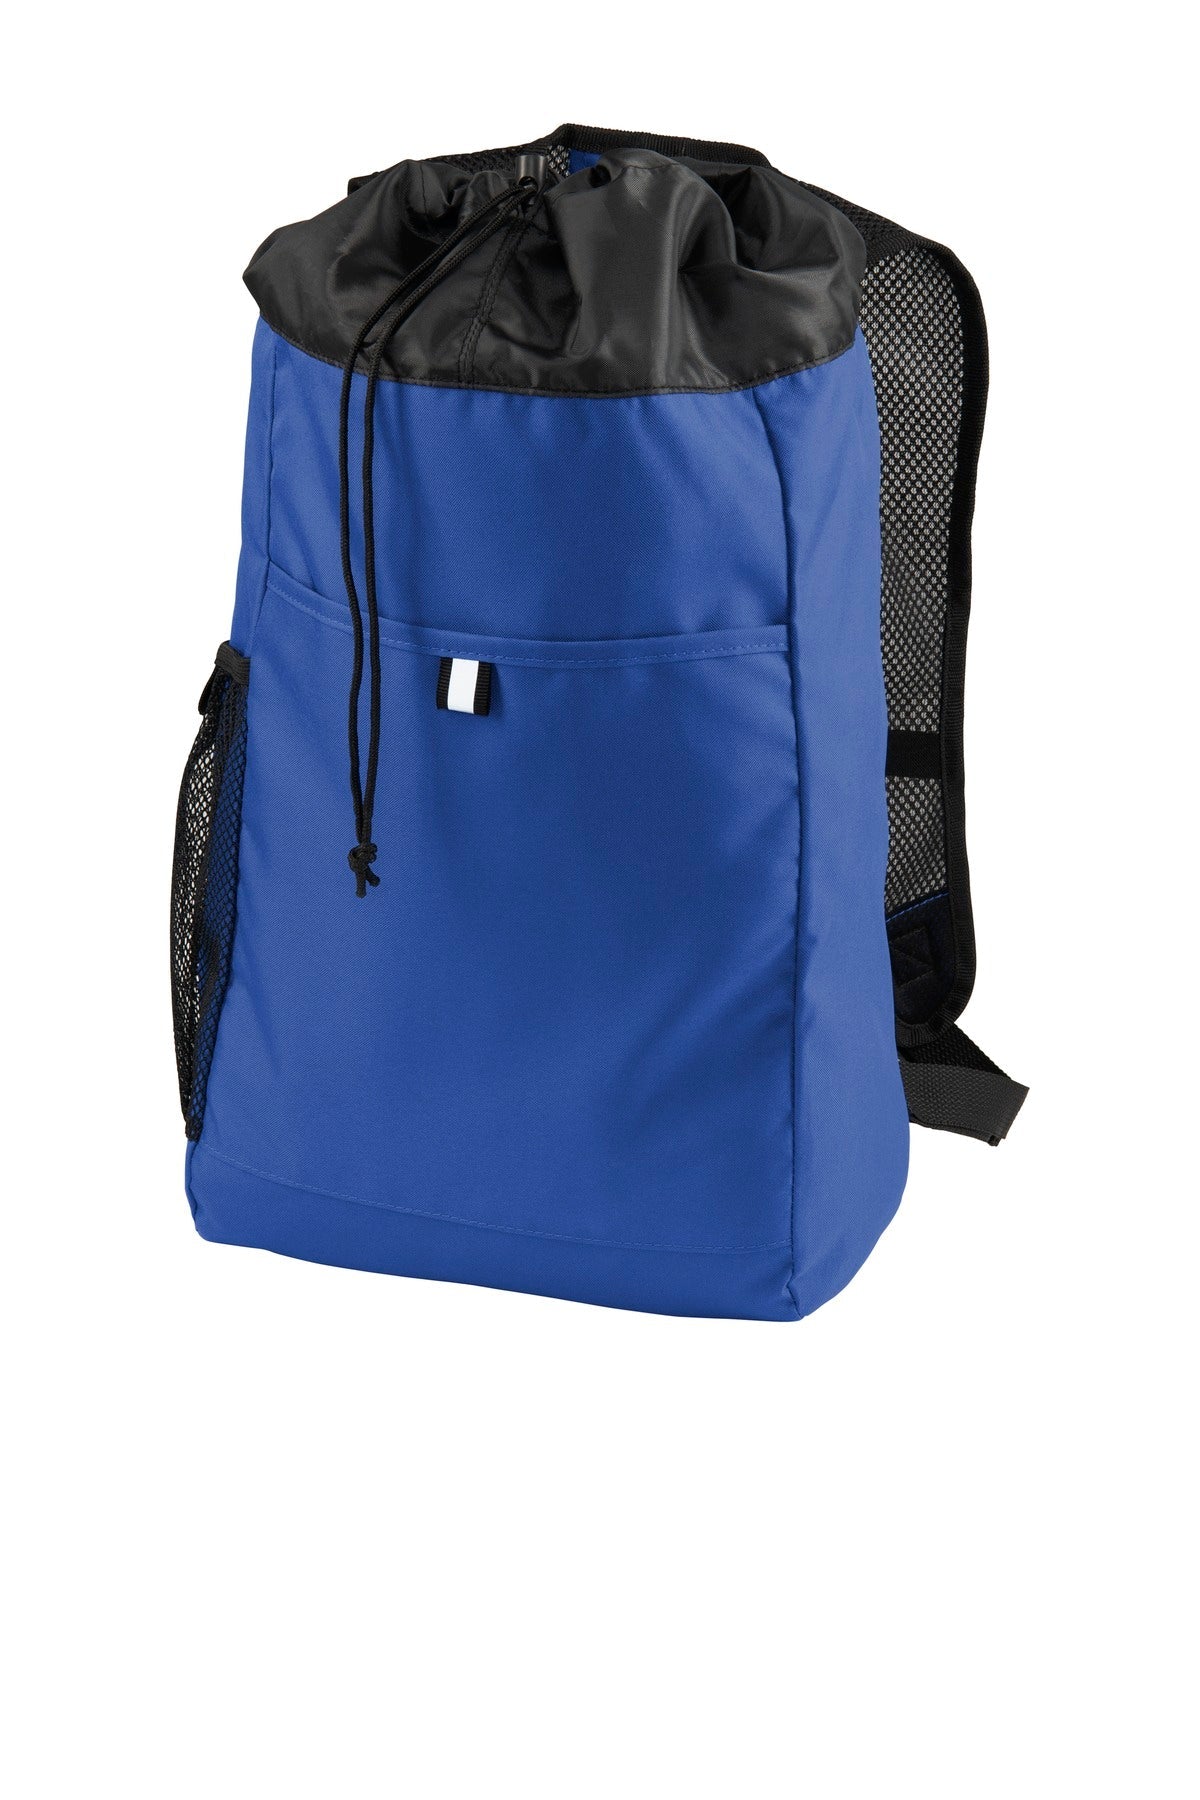 Port Authority ® Hybrid Backpack. BG211 - DFW Impression